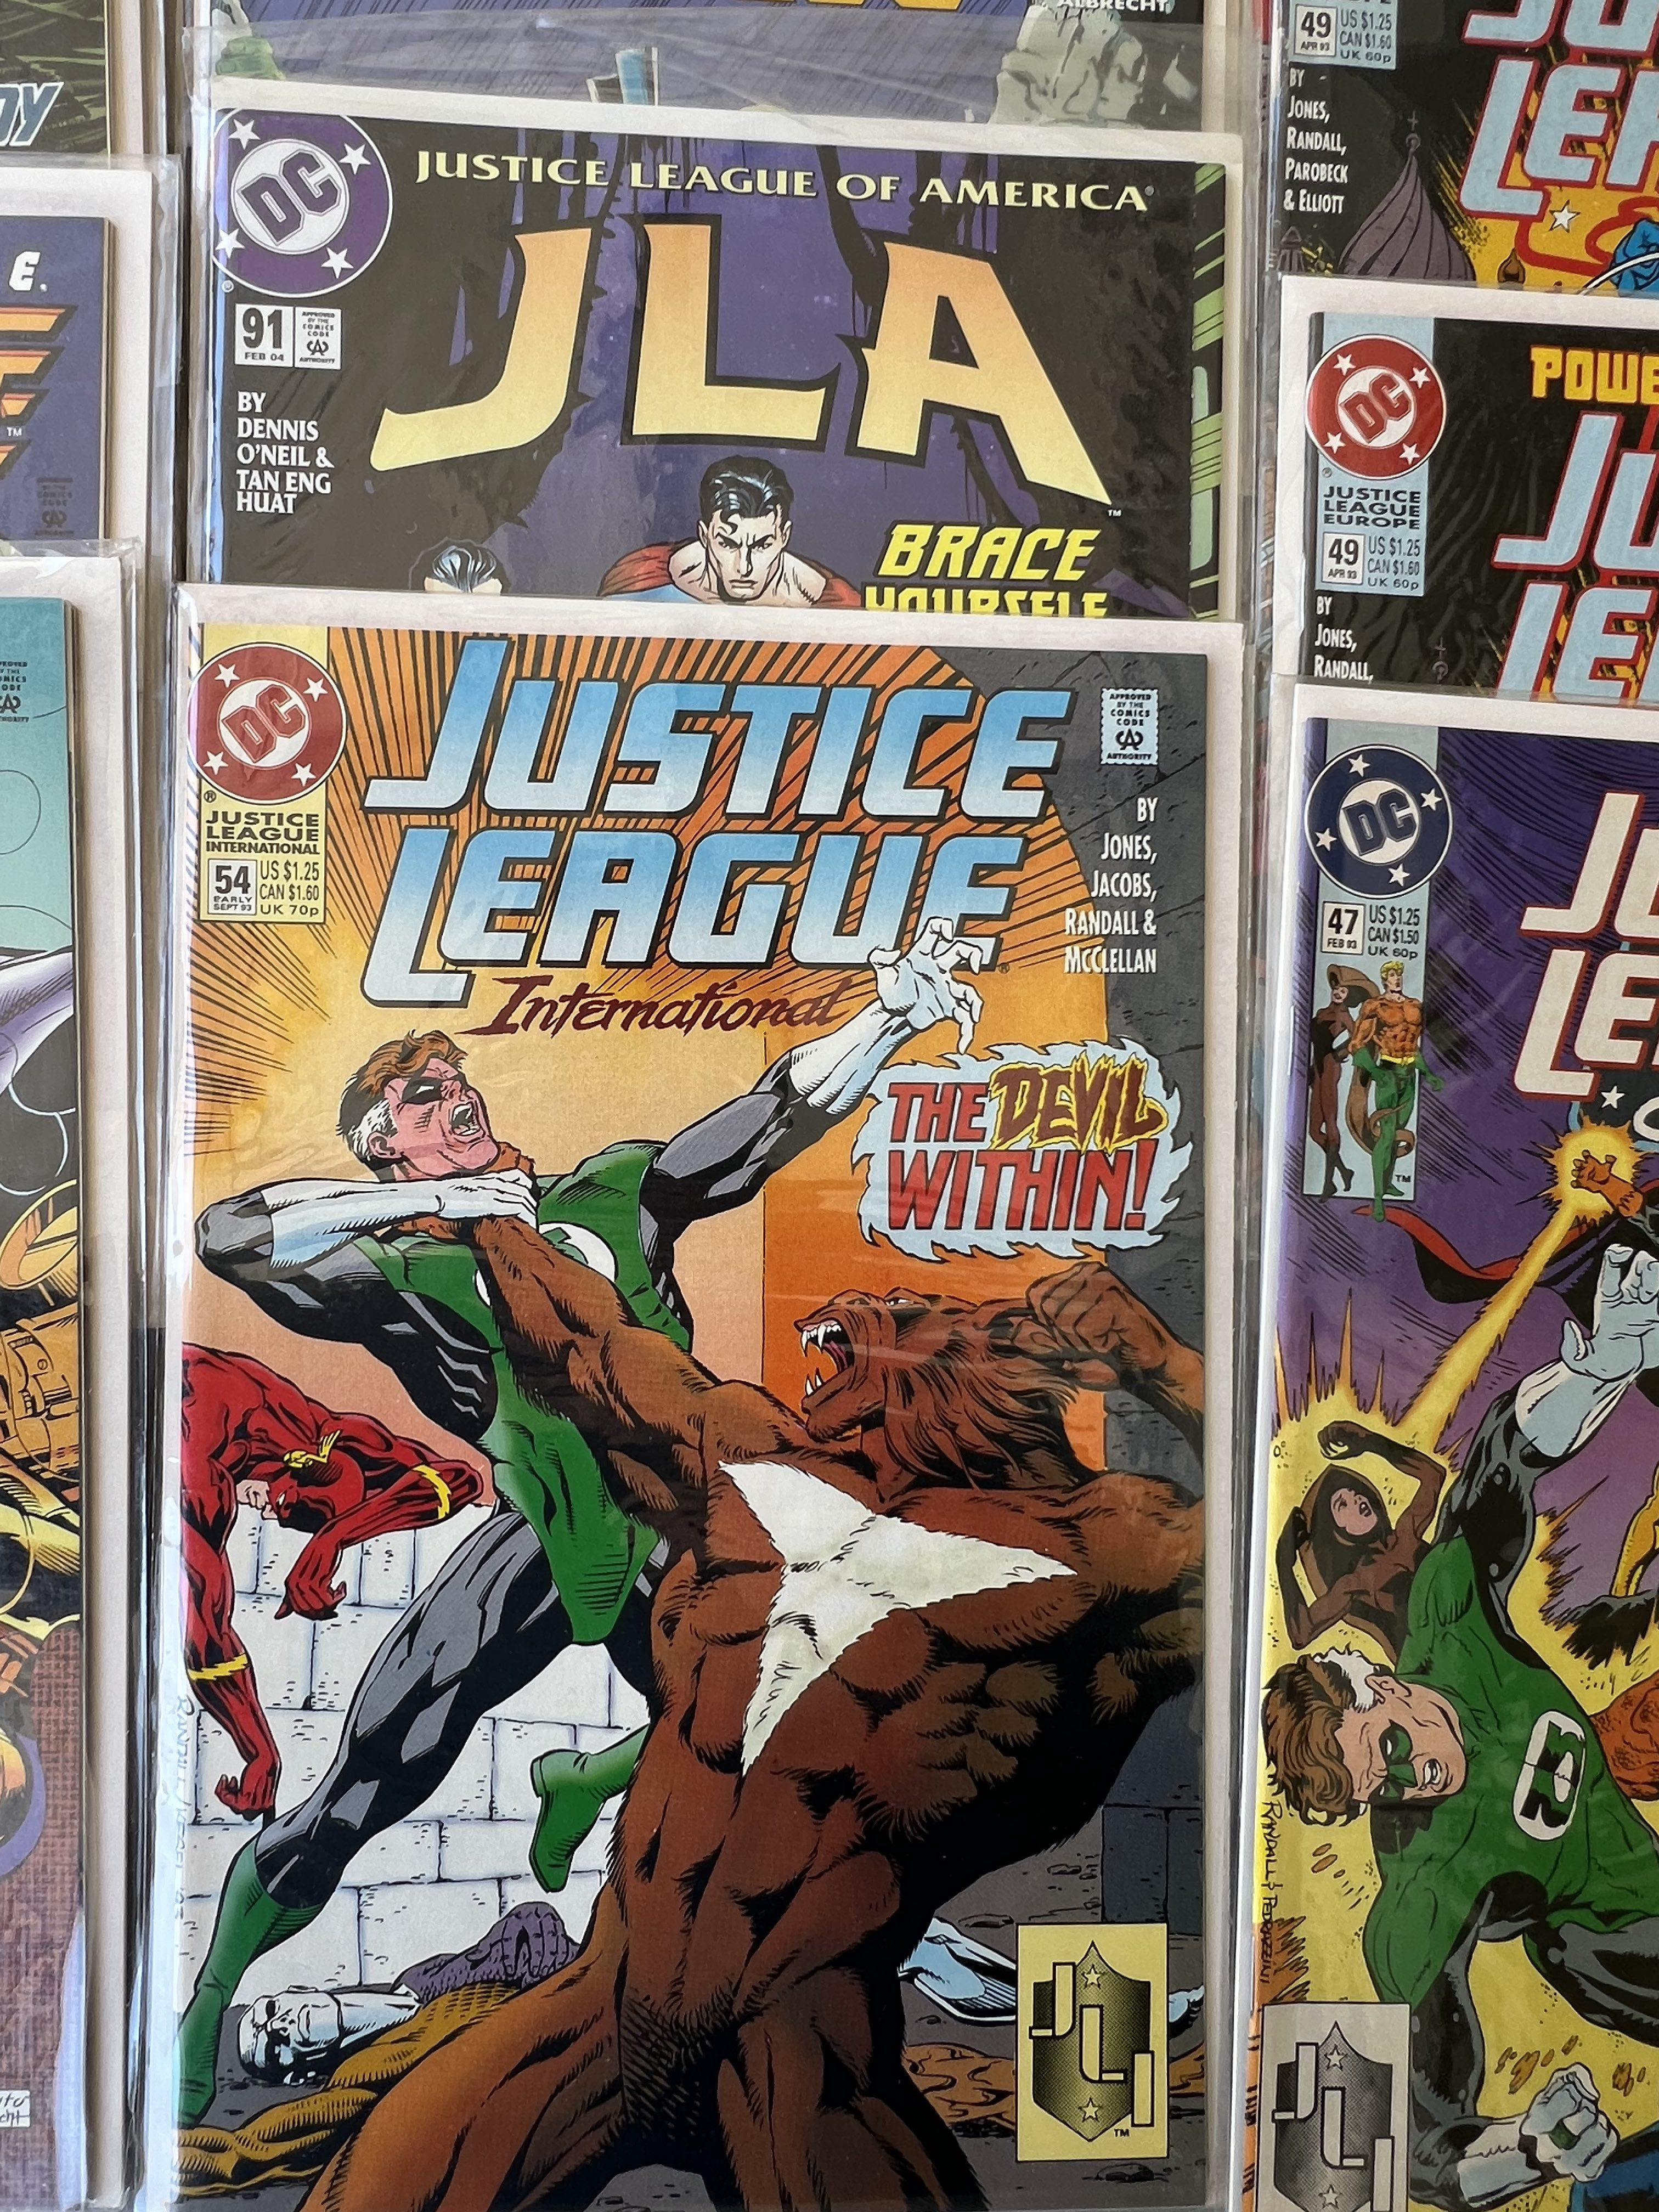 Comic Book Justice League America lot 24